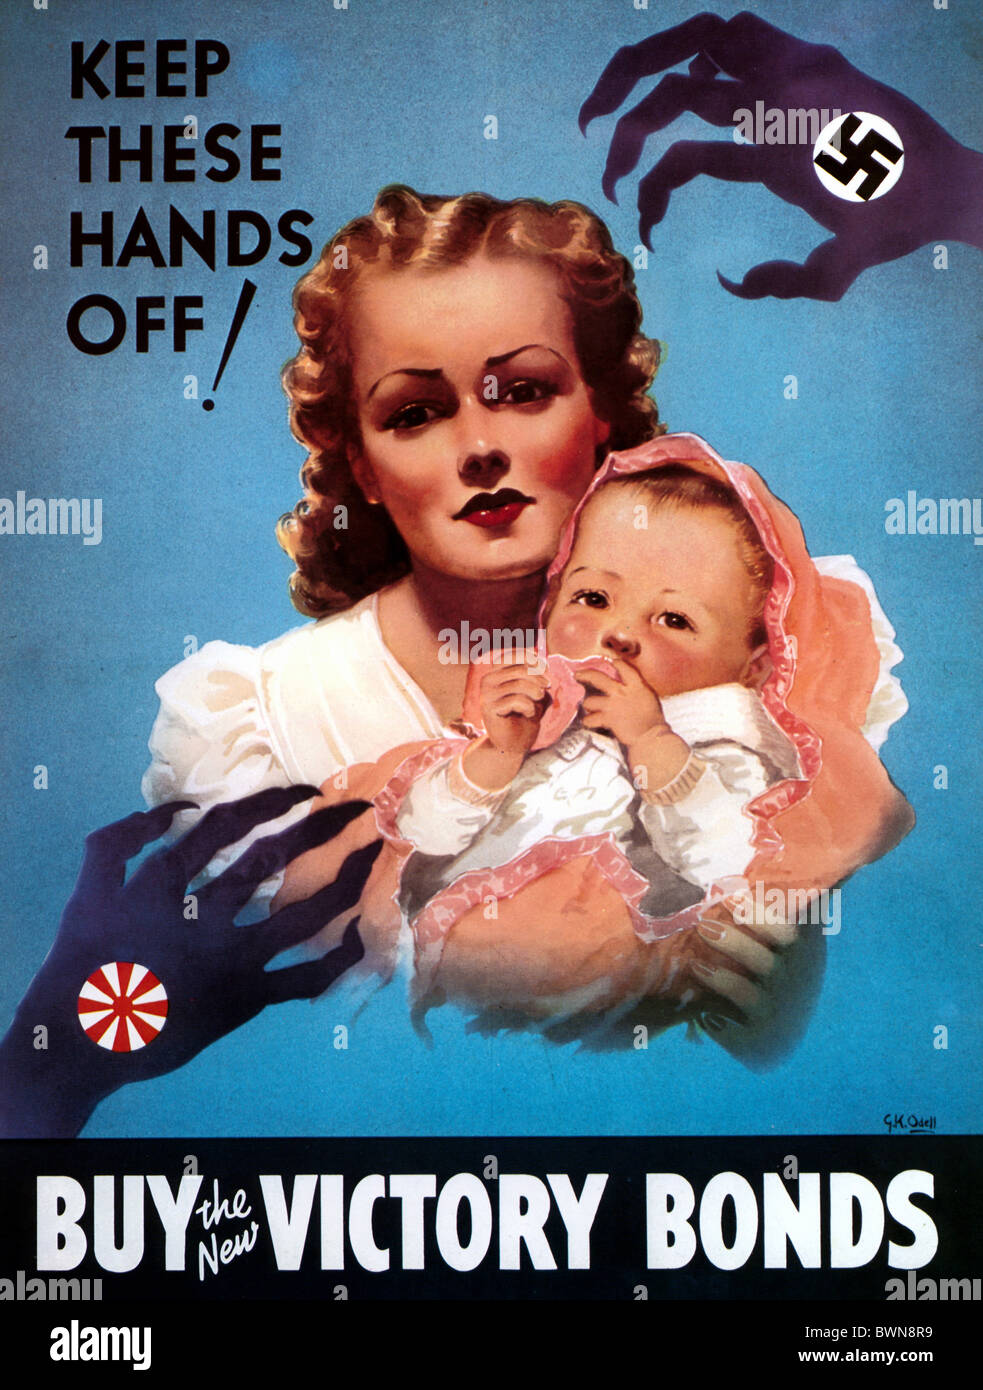 Canada Amérique du Nord poster 1942 Historique Historique L'histoire de la Seconde Guerre mondiale Seconde Guerre mondiale l'Allemagne nazie Wehrm Banque D'Images